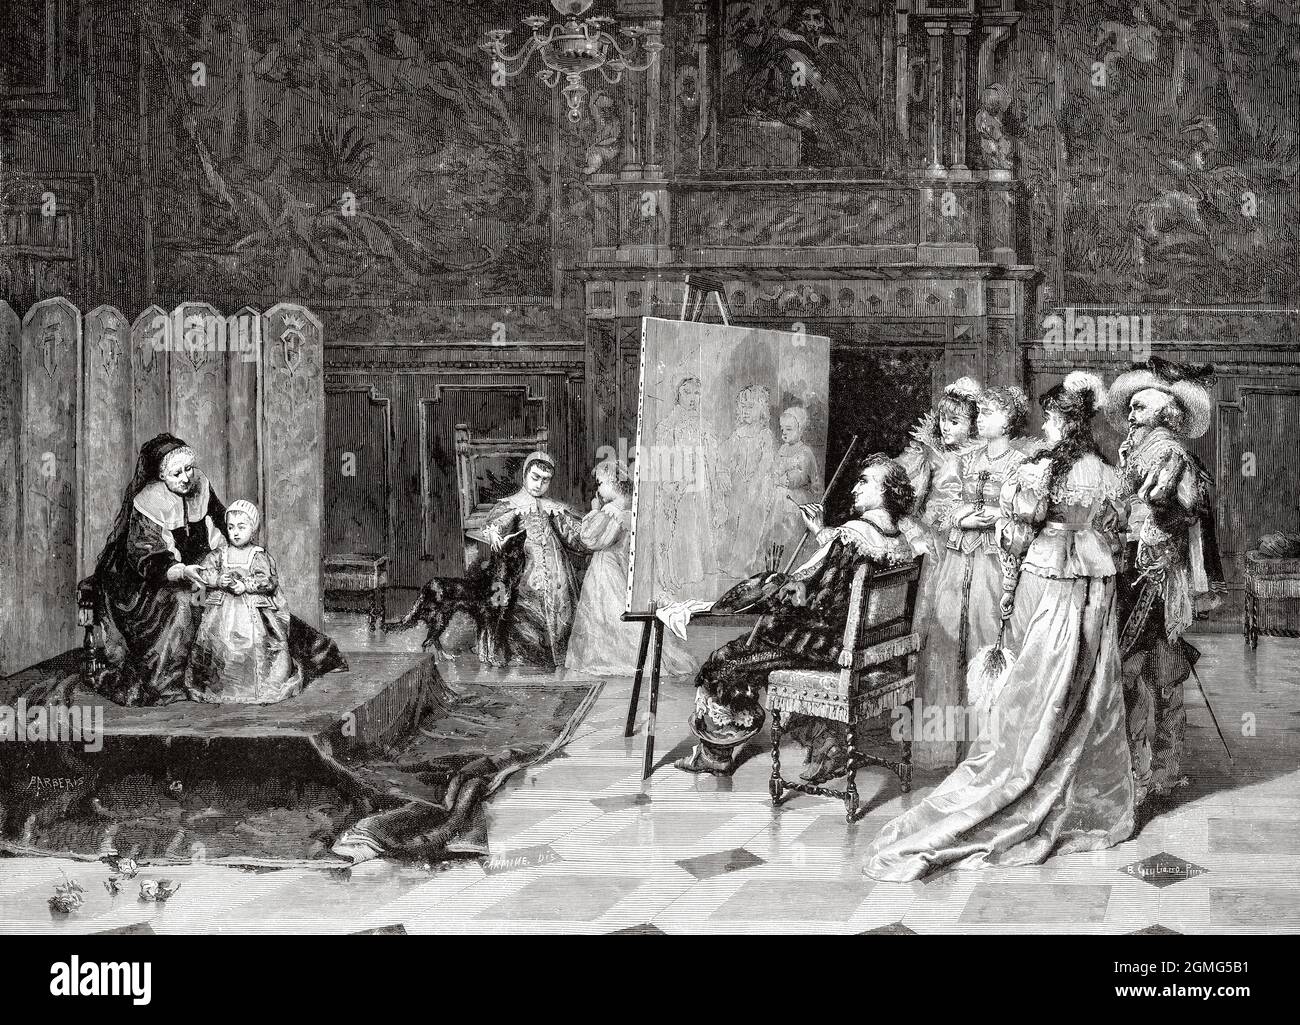 Der Maler Van Dyck, der die Söhne Karls I. porträtiert, Gemälde von Bartolomeo Giuliano (1825-1909), war ein italienischer Maler. Alte, gravierte Illustration aus dem 19. Jahrhundert von La Ilustración Artística 1882 Stockfoto